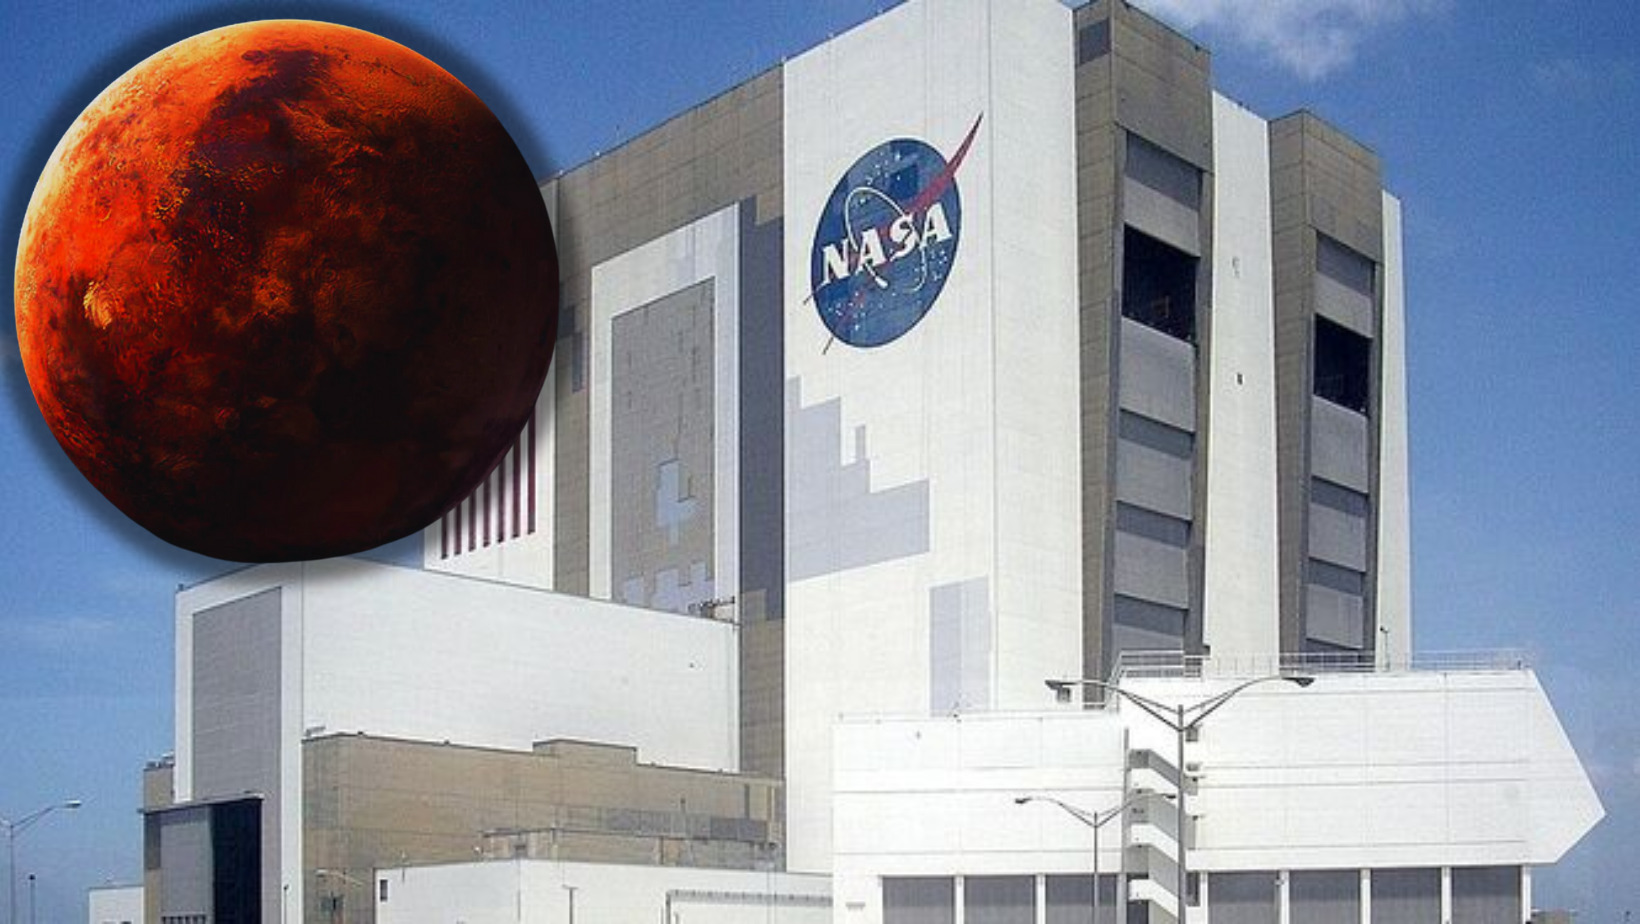 Fachada de la NASA y el planeta Marte. Foto: CDN Digital